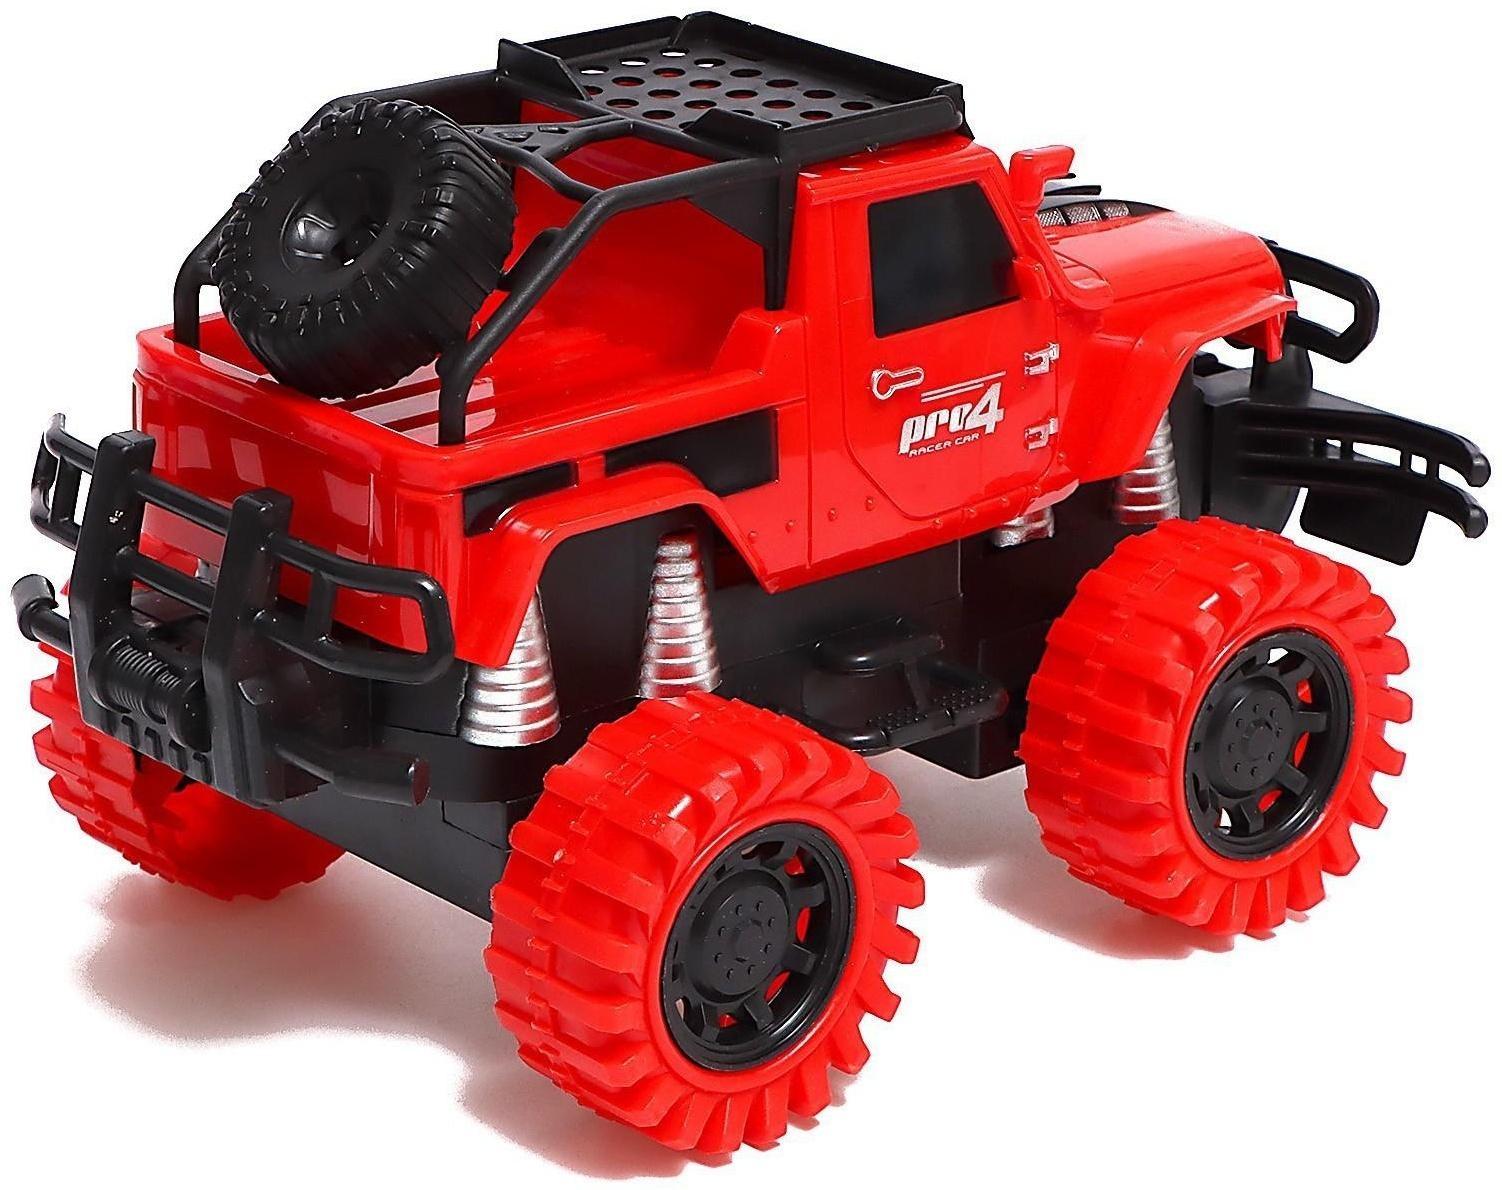 Джип радиоуправляемый Truck, масштаб 1:18, педали и руль, работает от аккумулятора, цвет красный